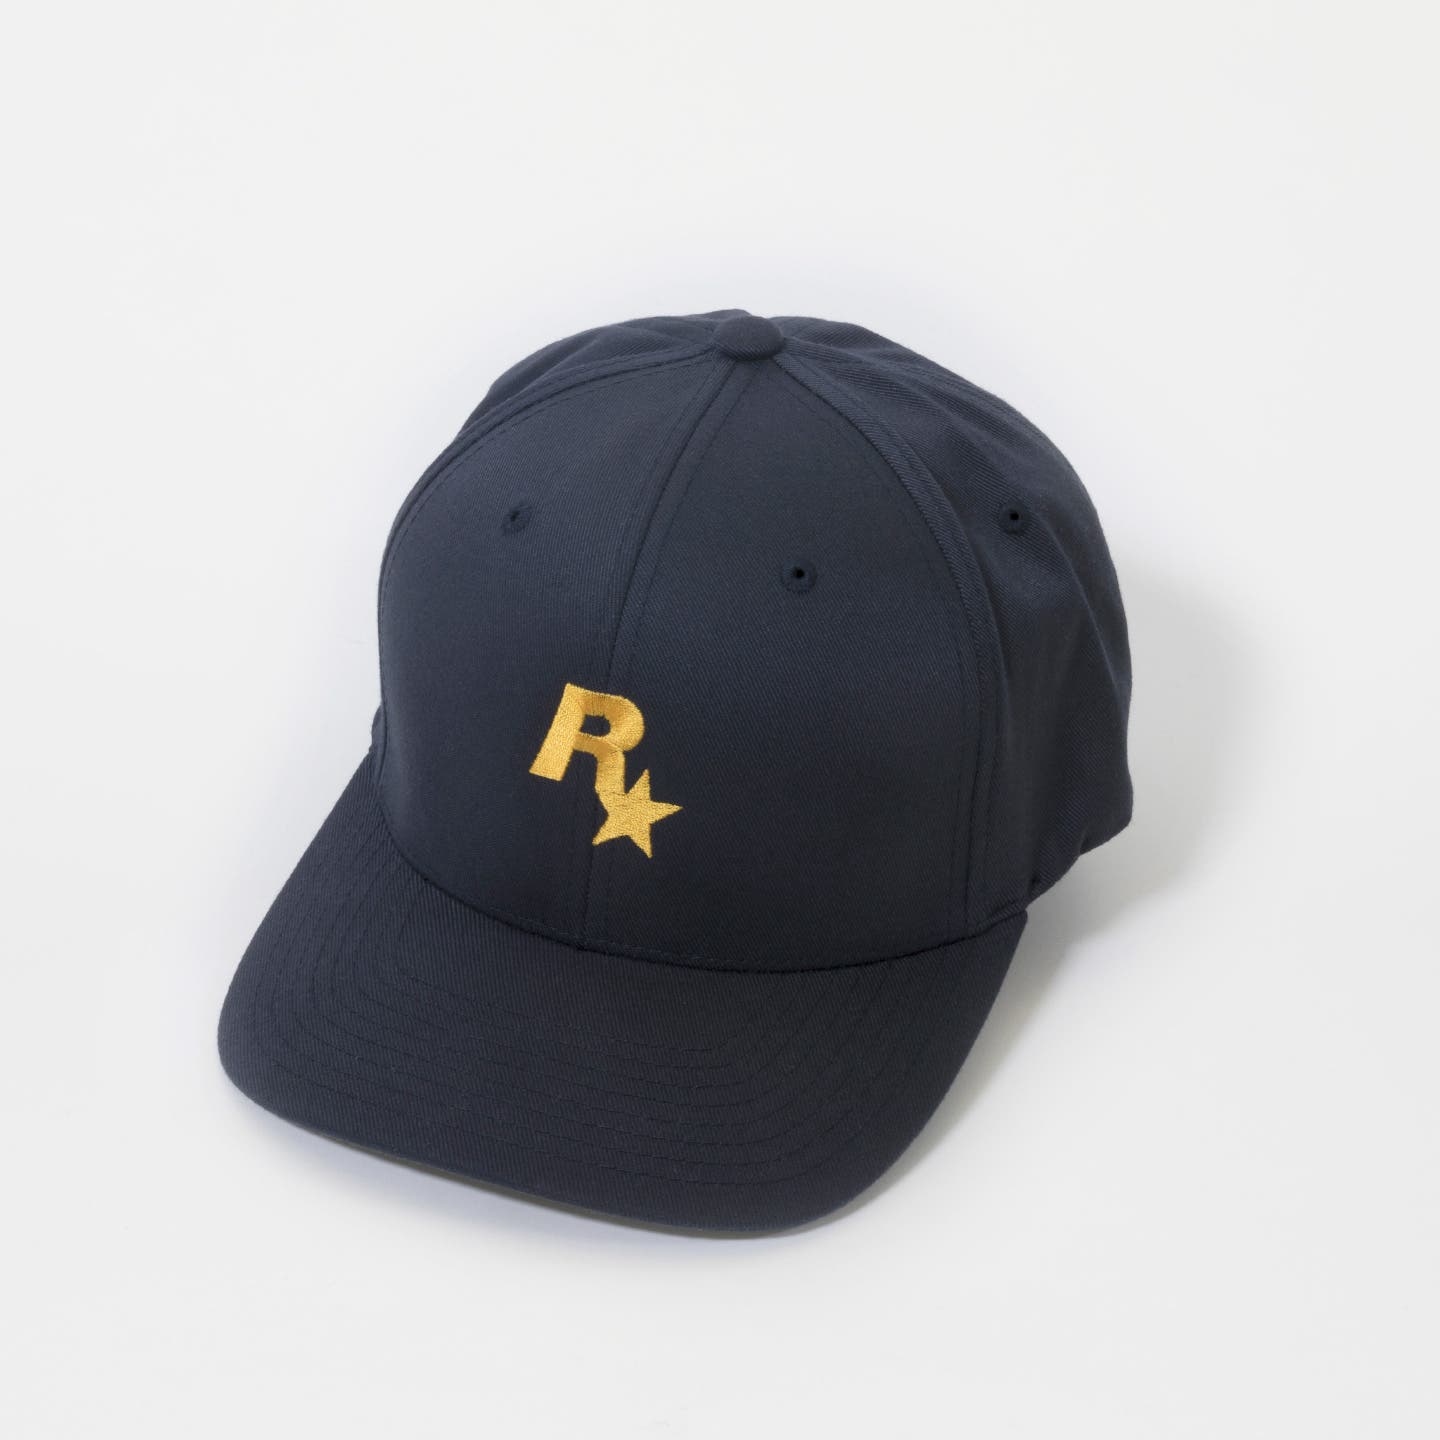 Rockstar Raise Social Club Crew Cap